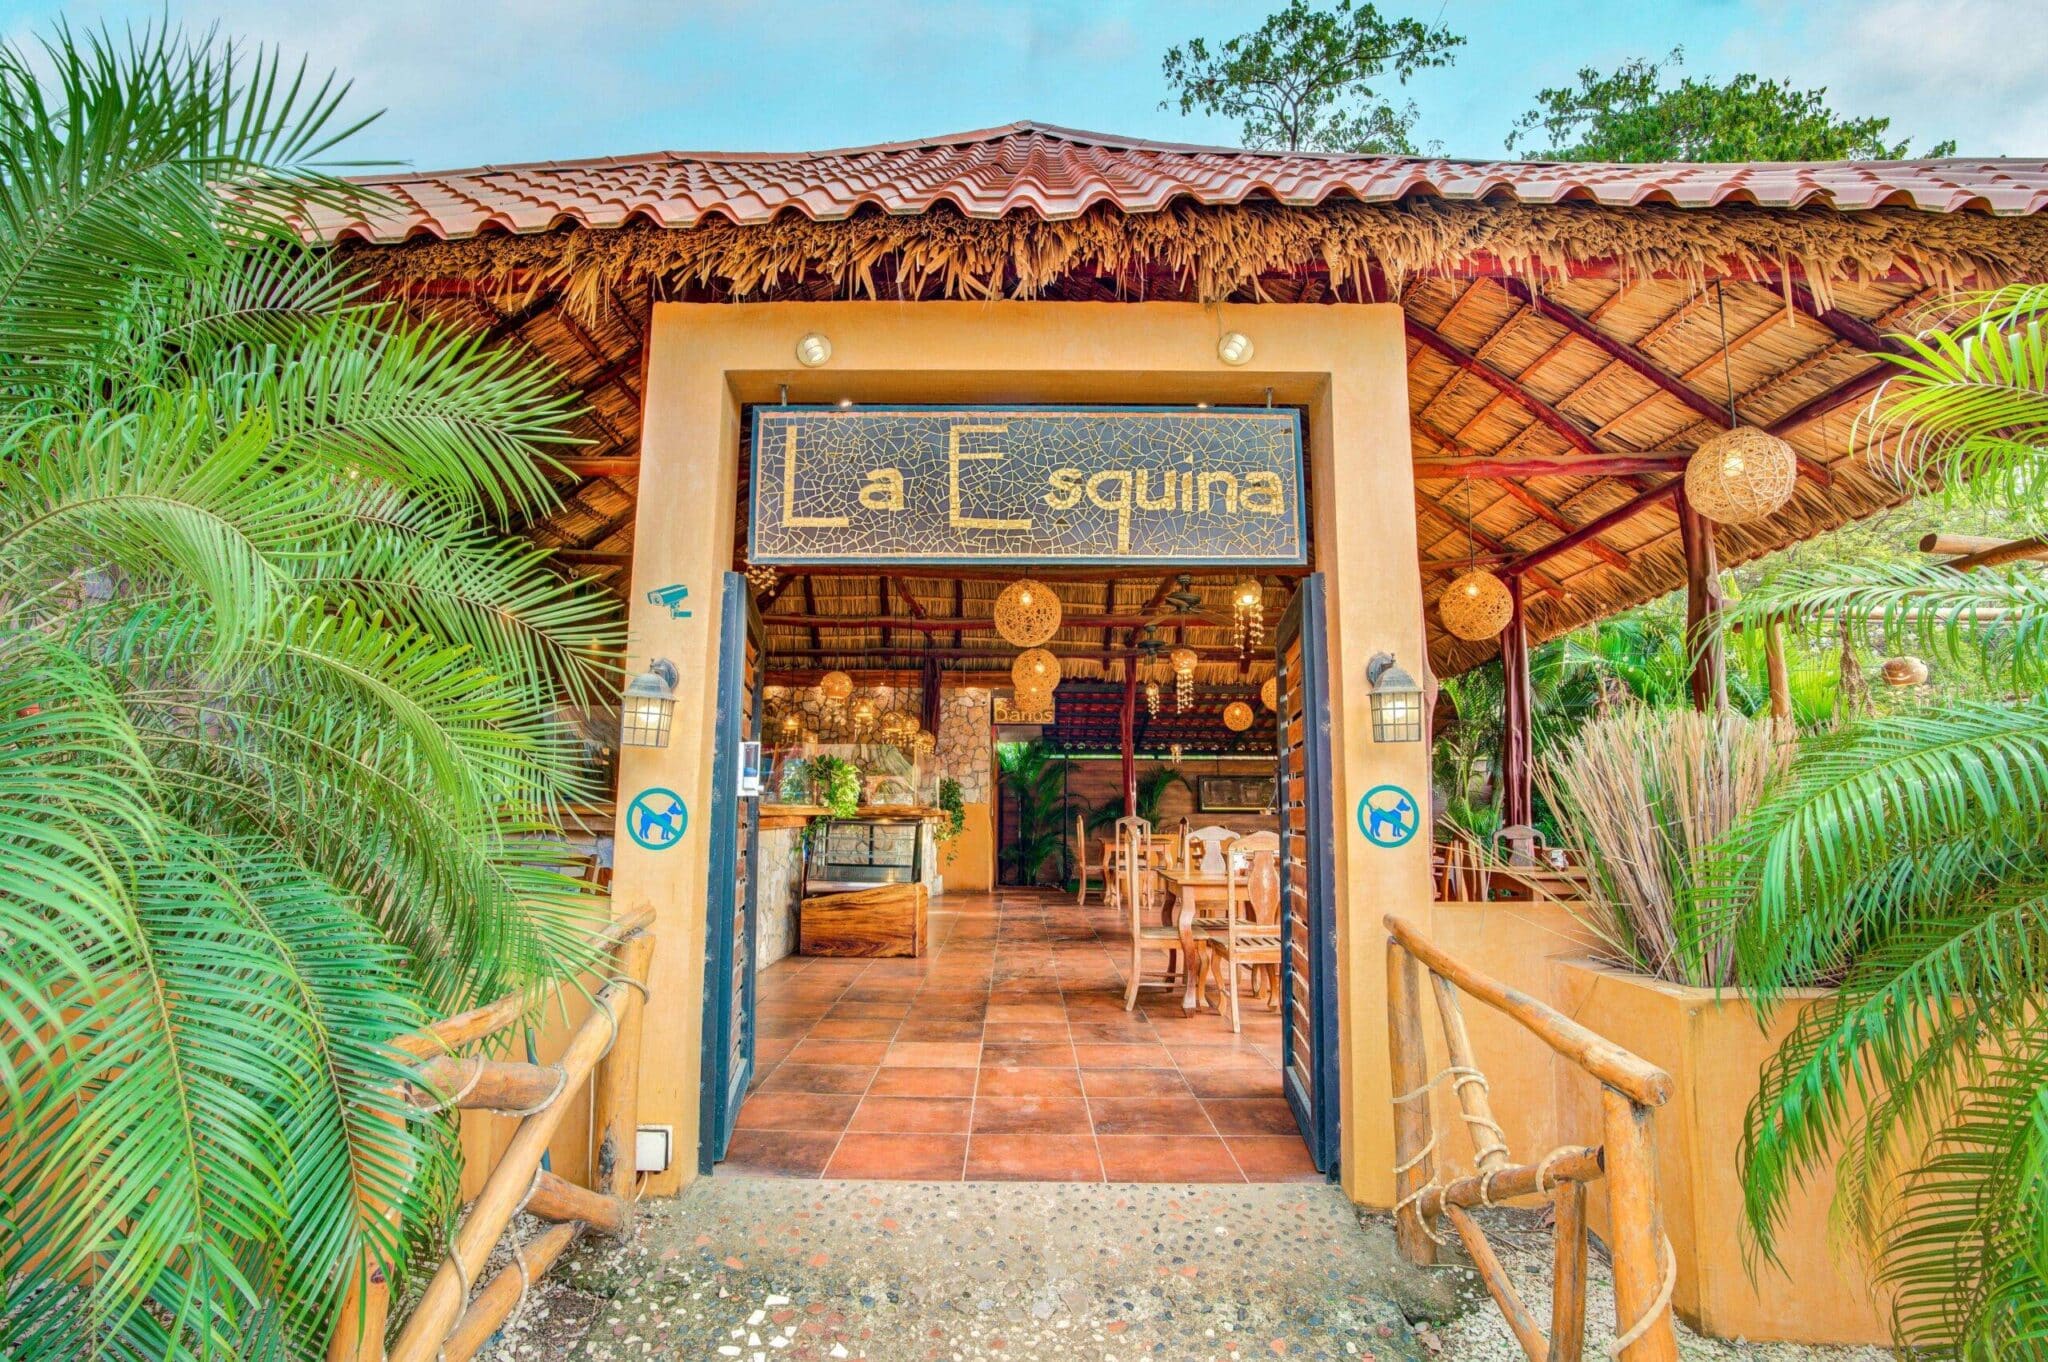 La Esquina business for sale in Tamarindo Costa Rica